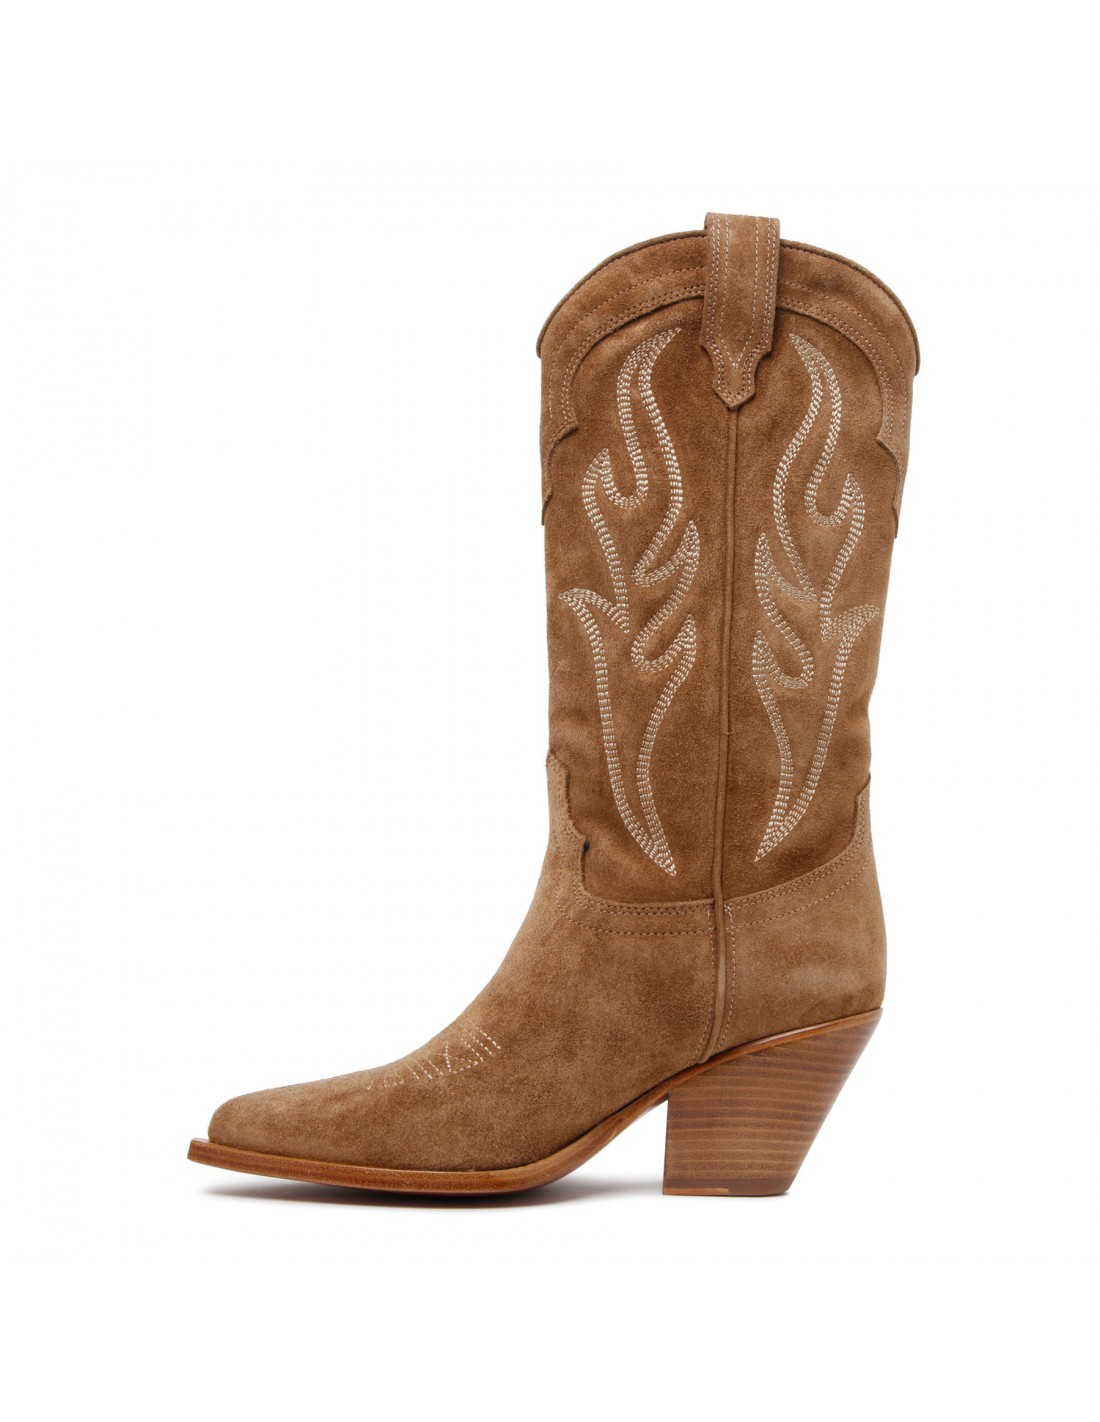 Santa Fe brown suede boots